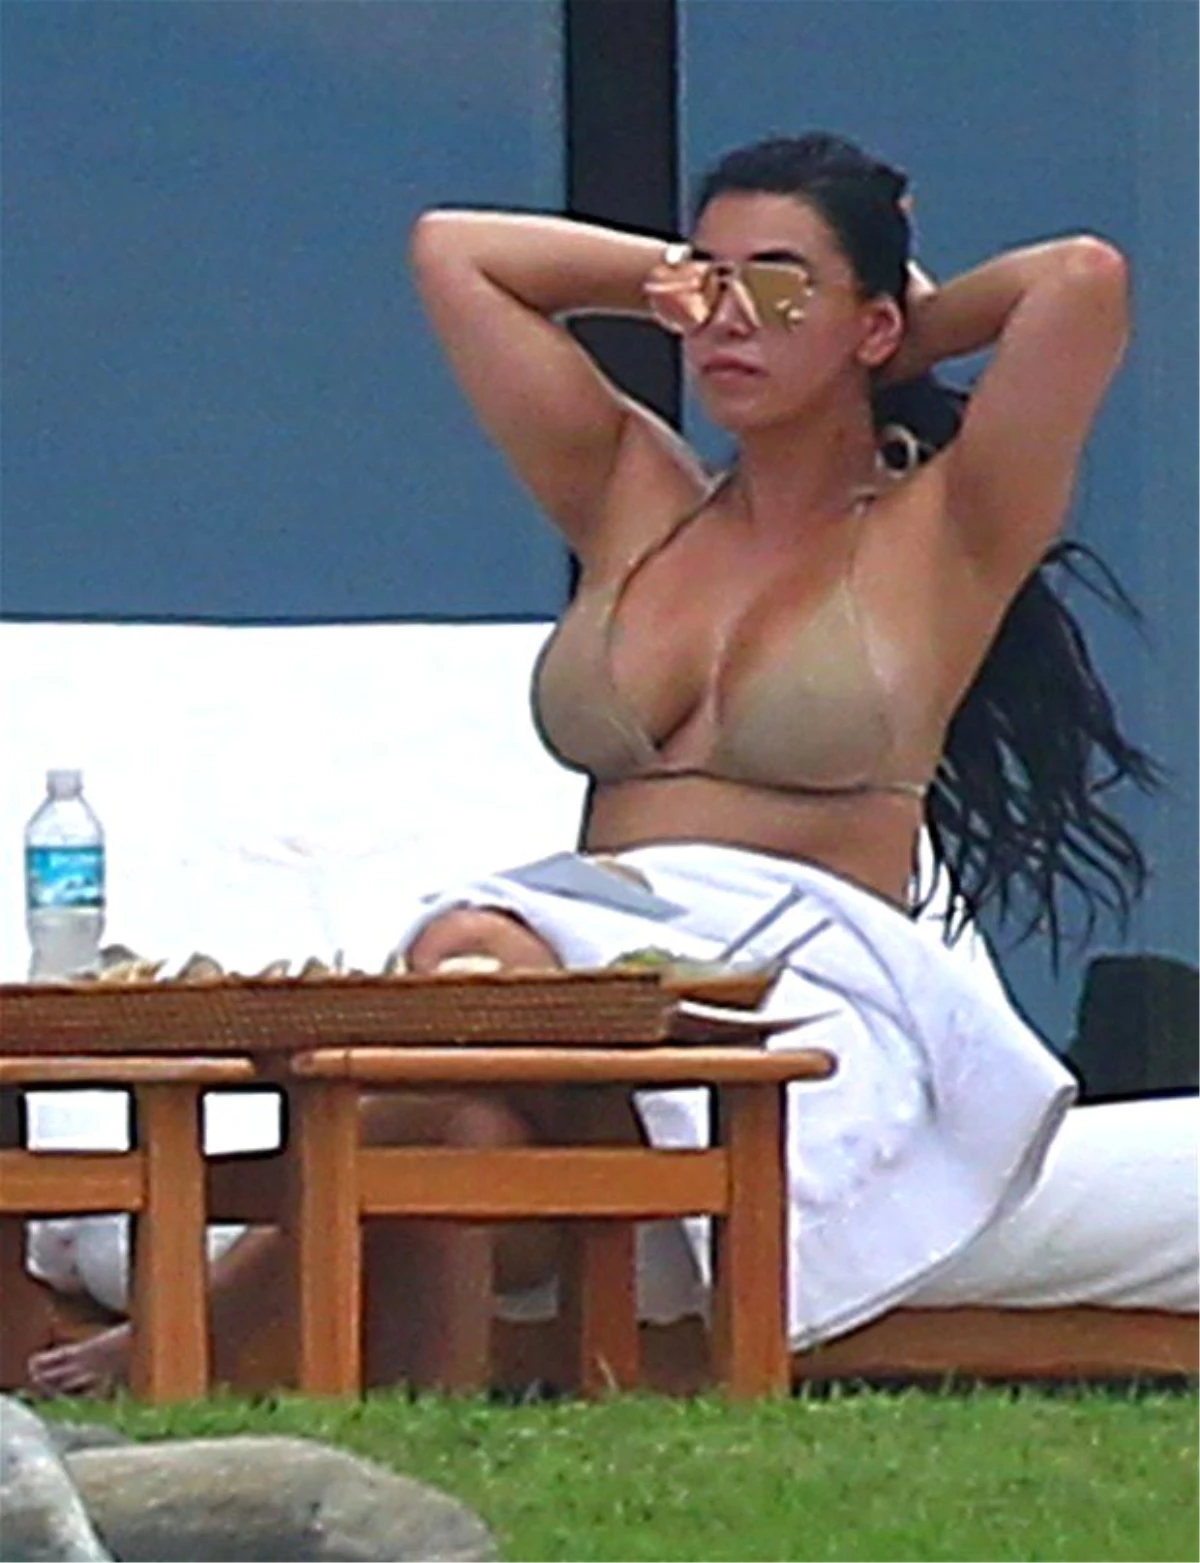 Kardashian, Paparazzileri Kandırmak İçin Dublör Kullanmış